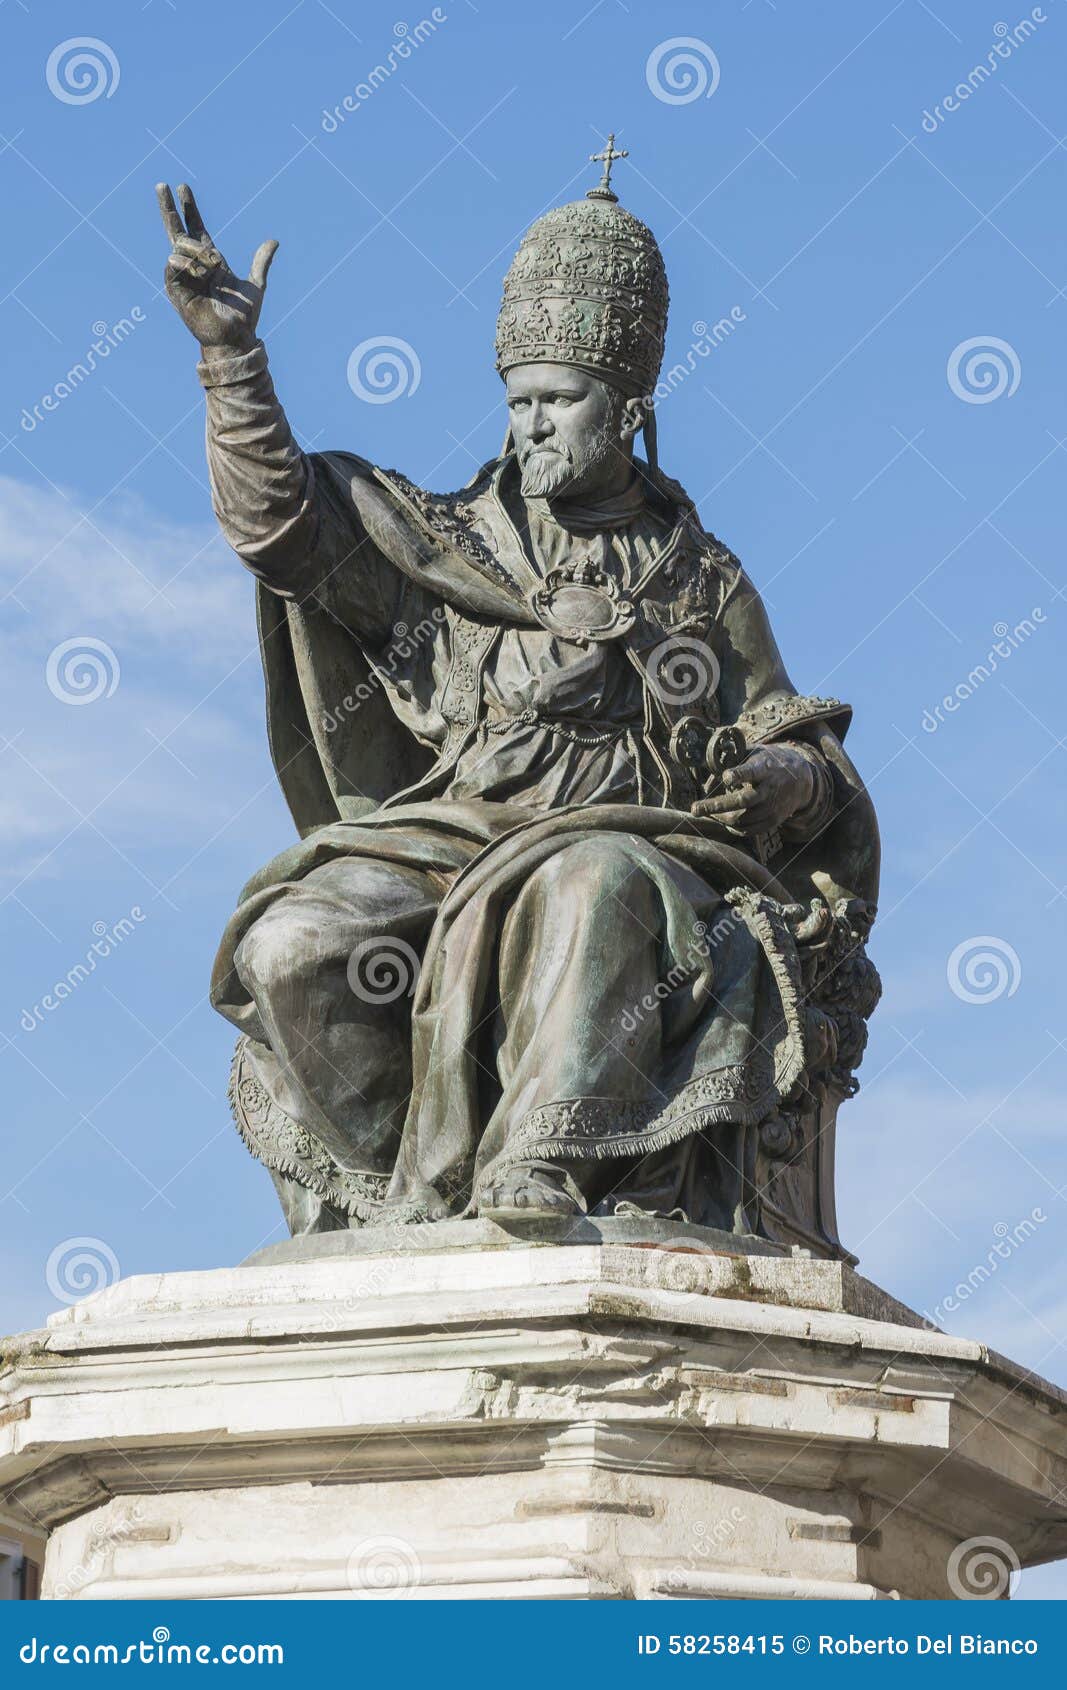 statue of pope paul v, rimini